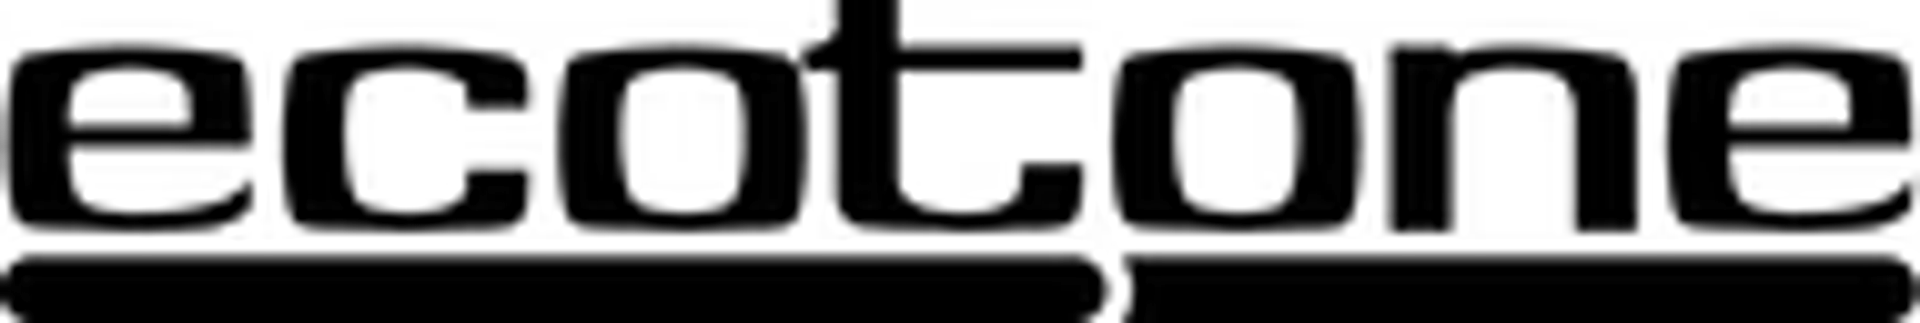 ECOTONE logo de circulaires